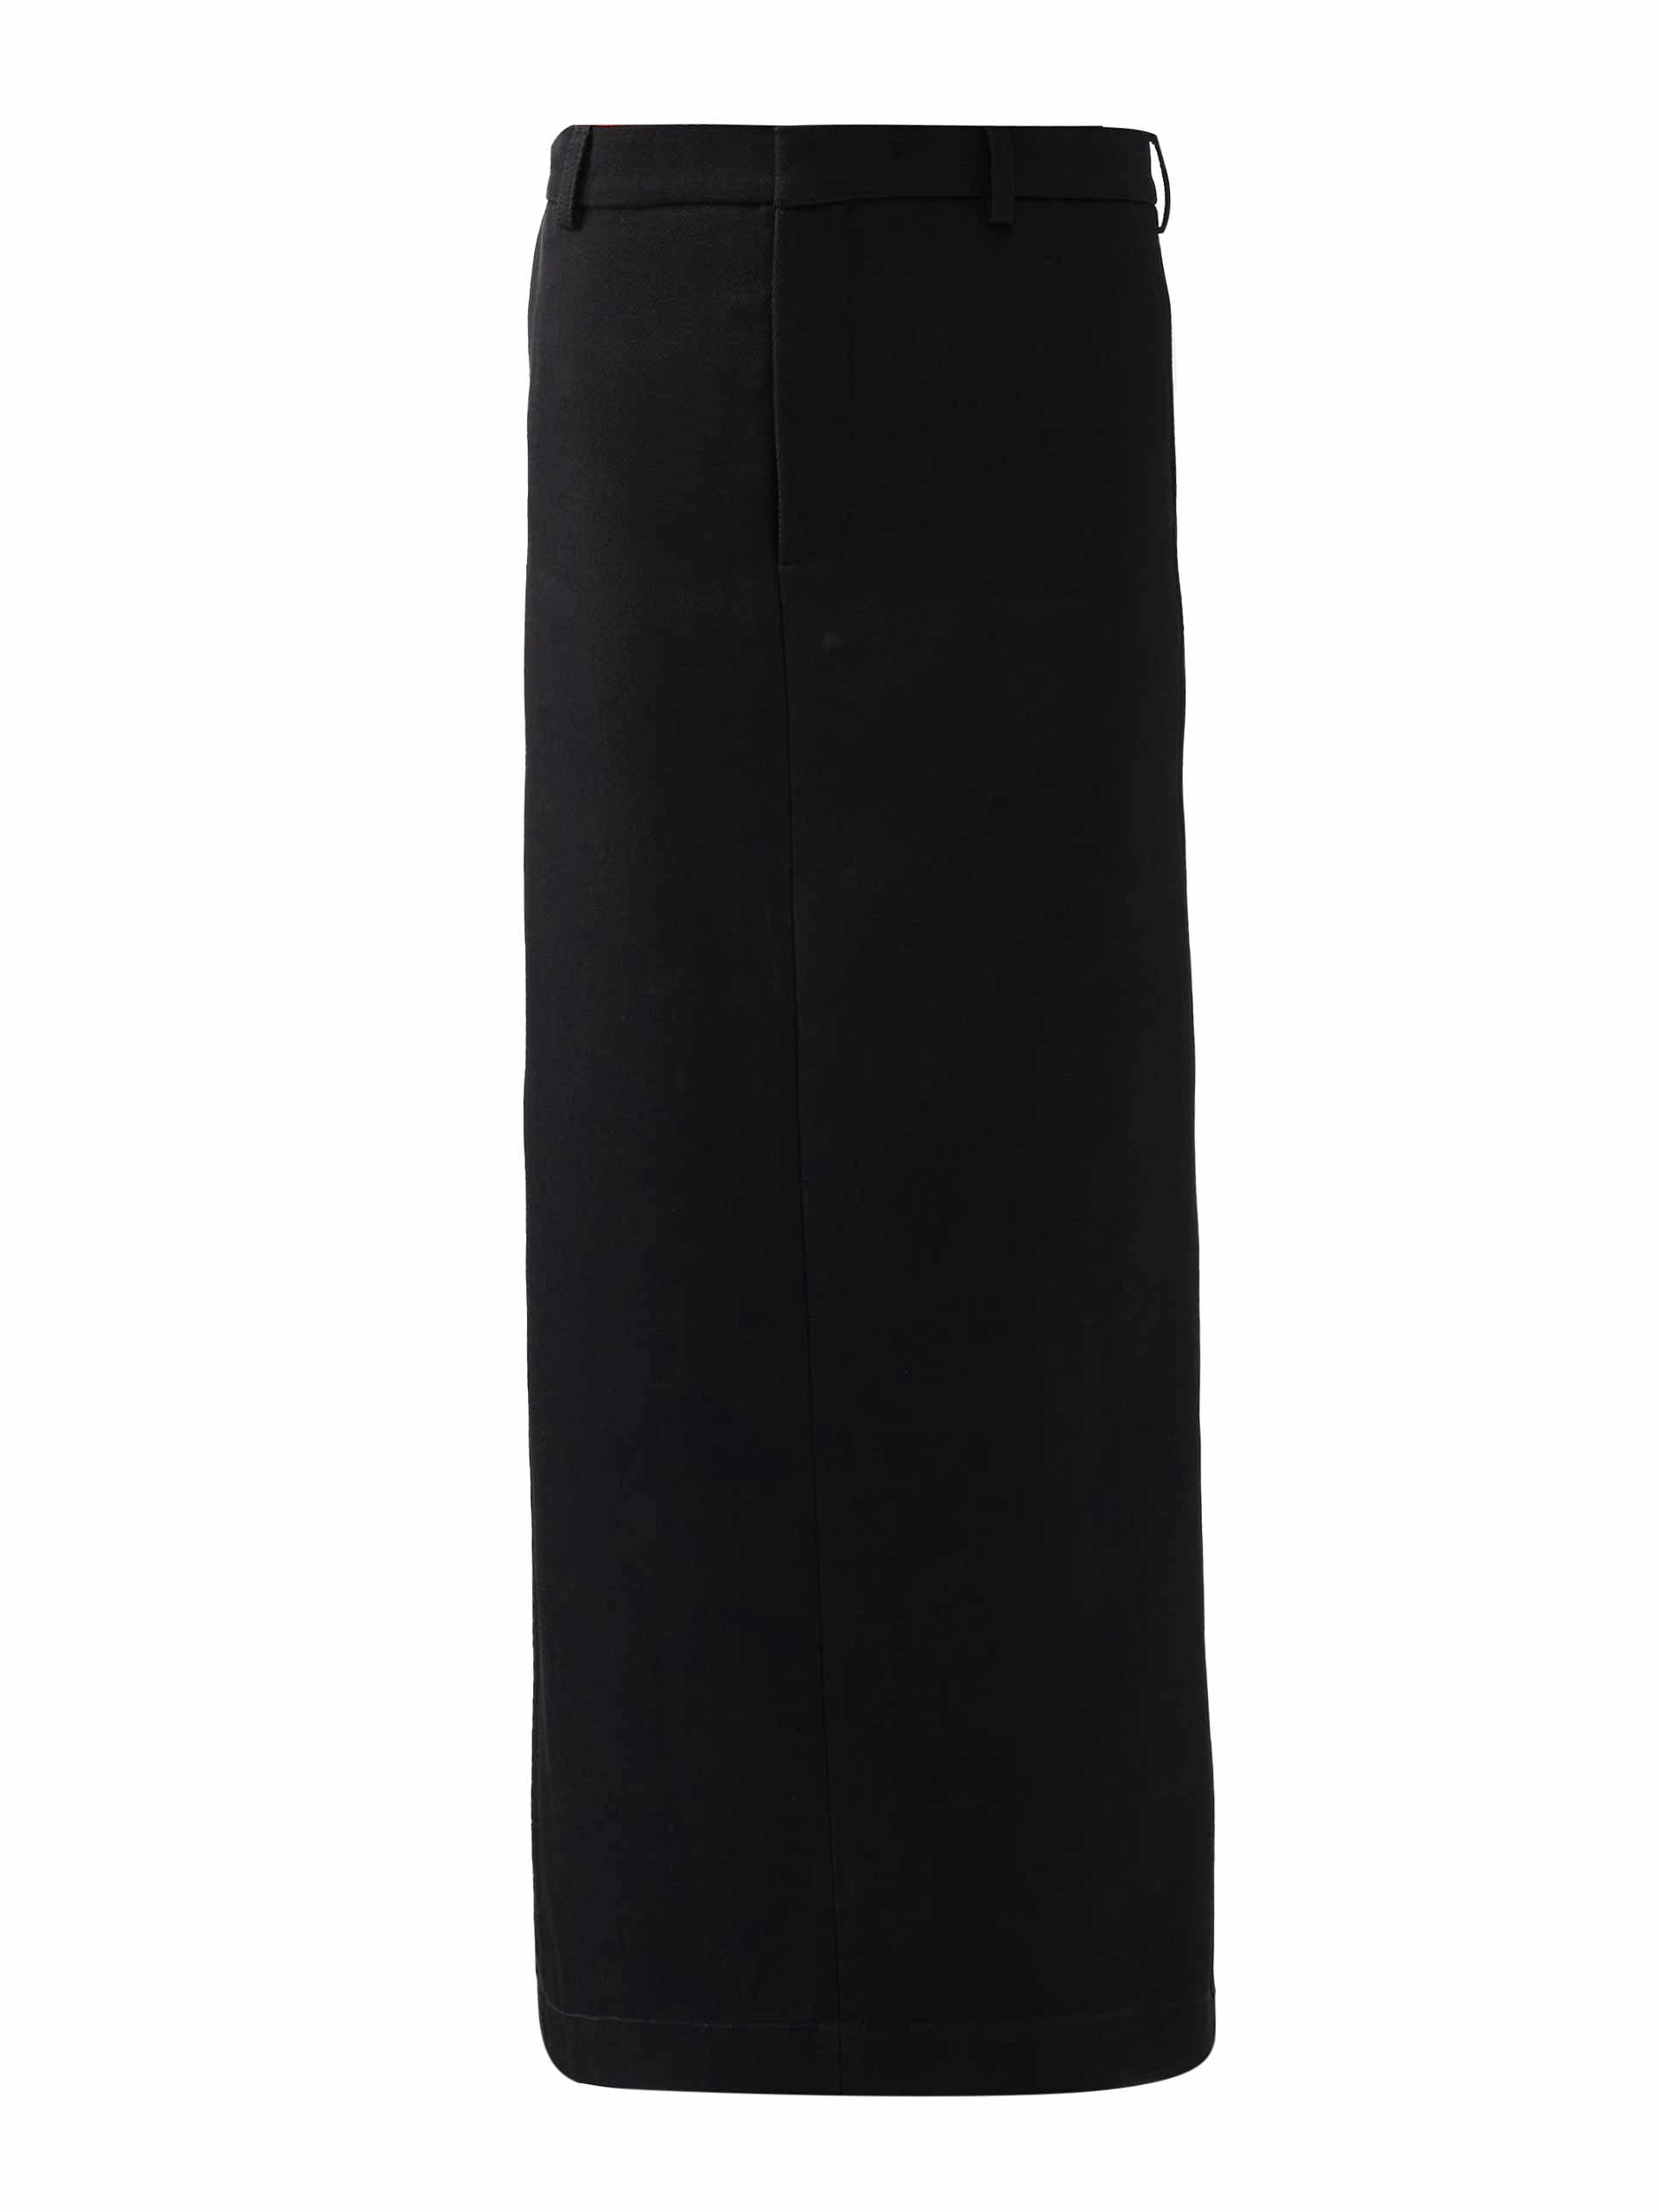 Black twill maxi skirt